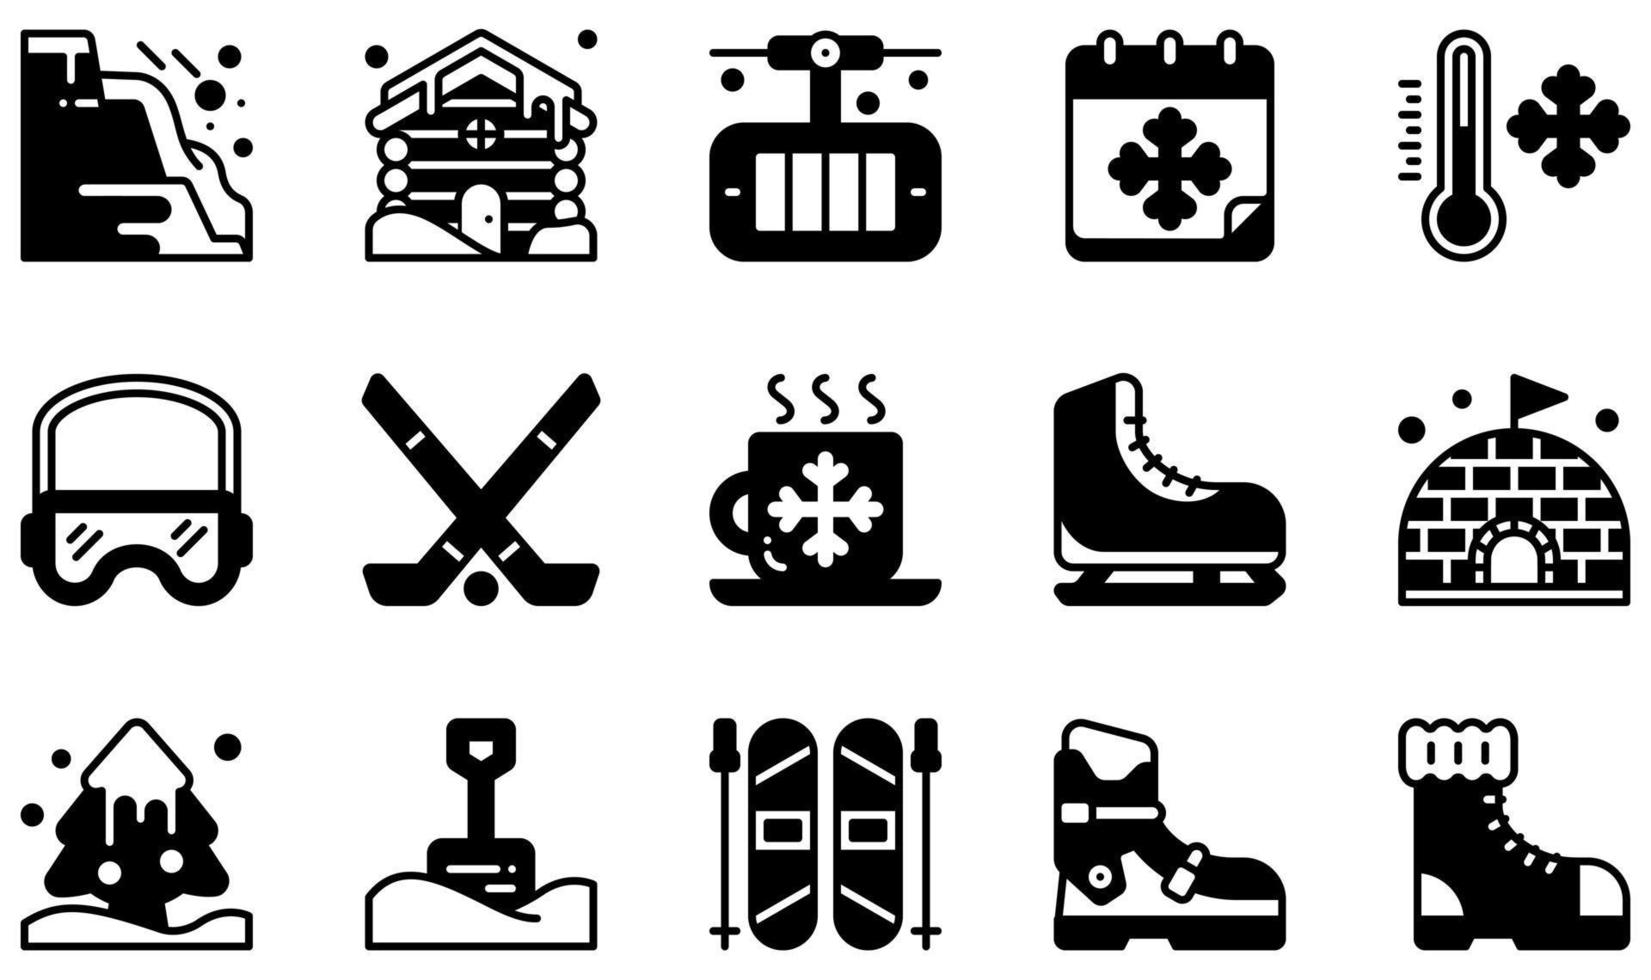 conjunto de ícones vetoriais relacionados ao inverno. contém ícones como avalanche, cabine, hóquei, patinação no gelo, iglu, esqui e muito mais. vetor